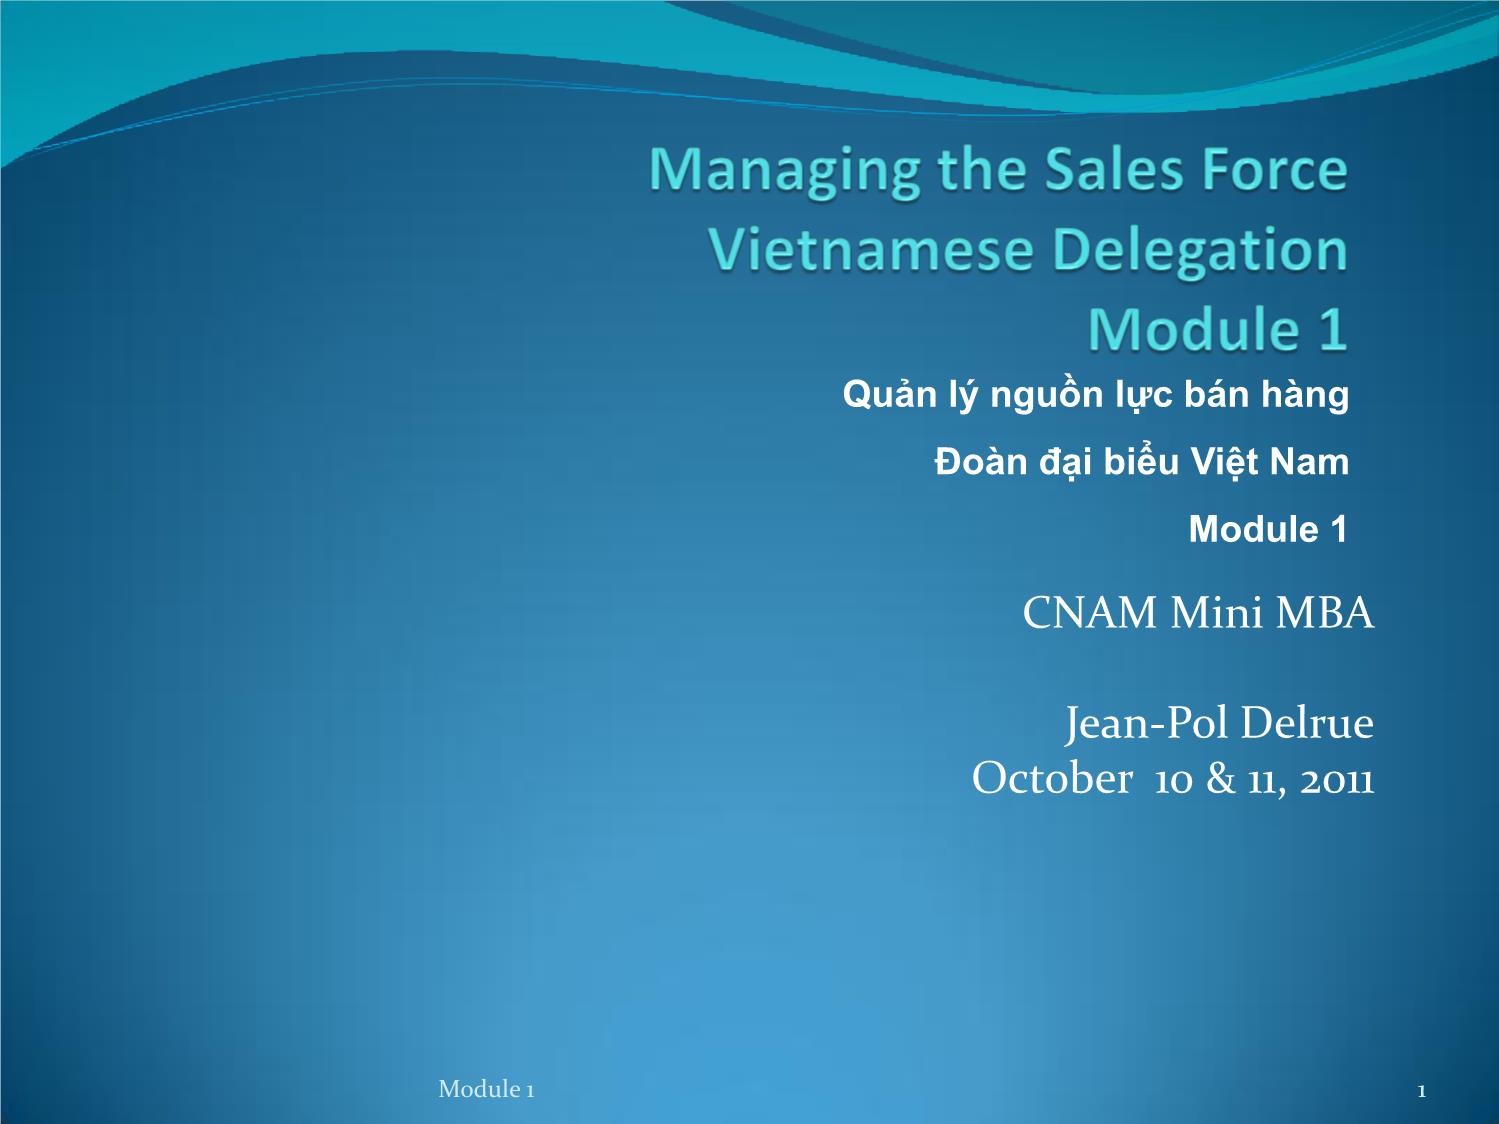 Bài giảng Quản lý nguồn lực bán hàng Đoàn đại biểu Việt Nam trang 1